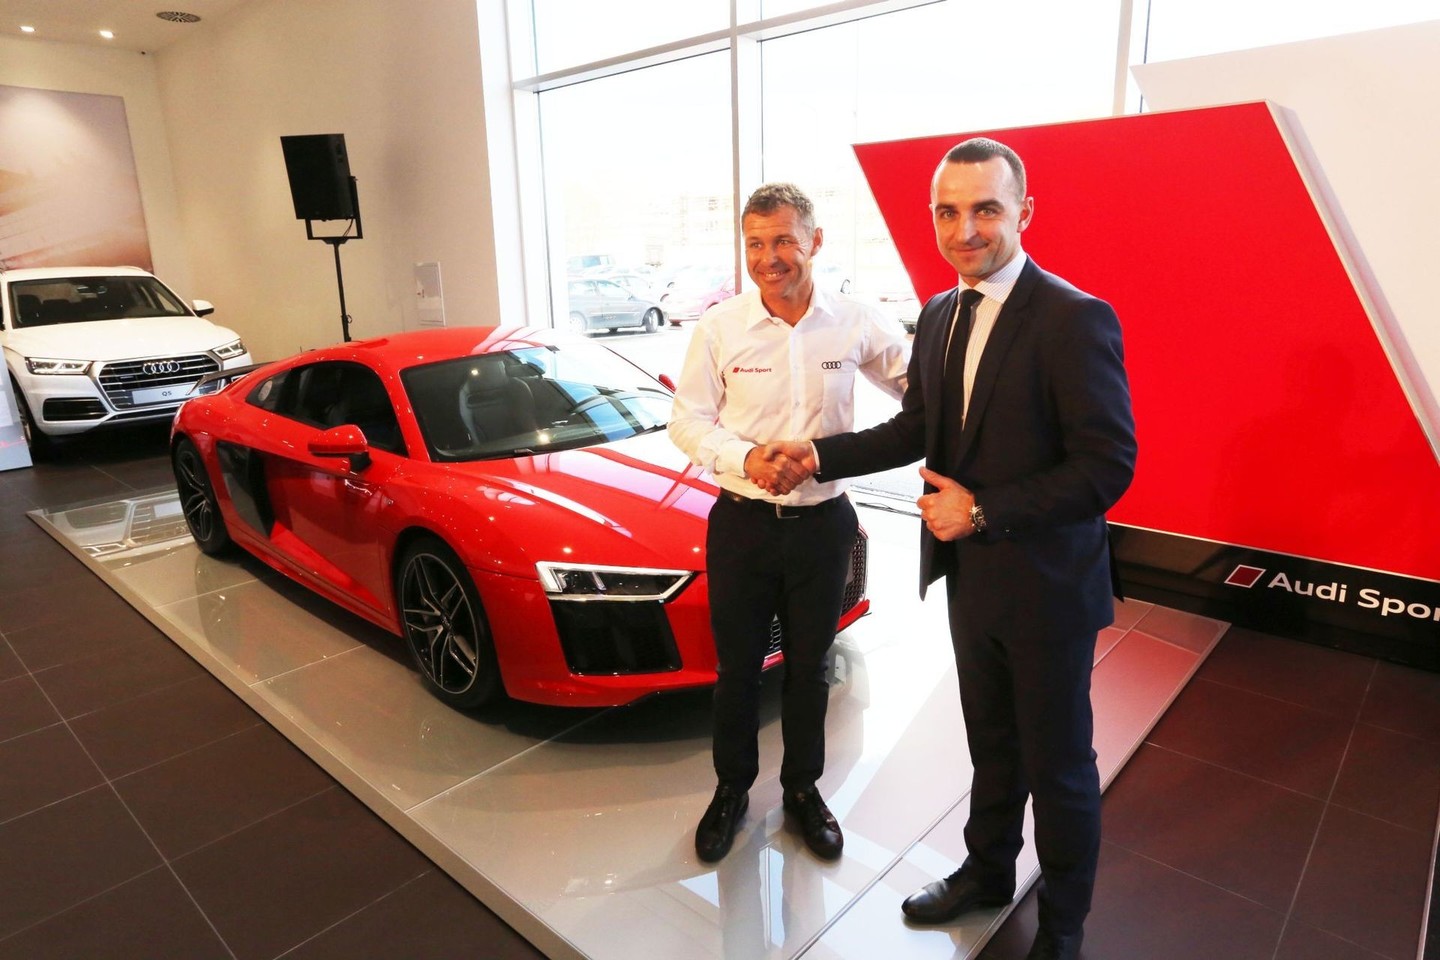 Kaune atidarytas sportinių „Audi“ modelių salonas.<br>M.Patašiaus nuotr.